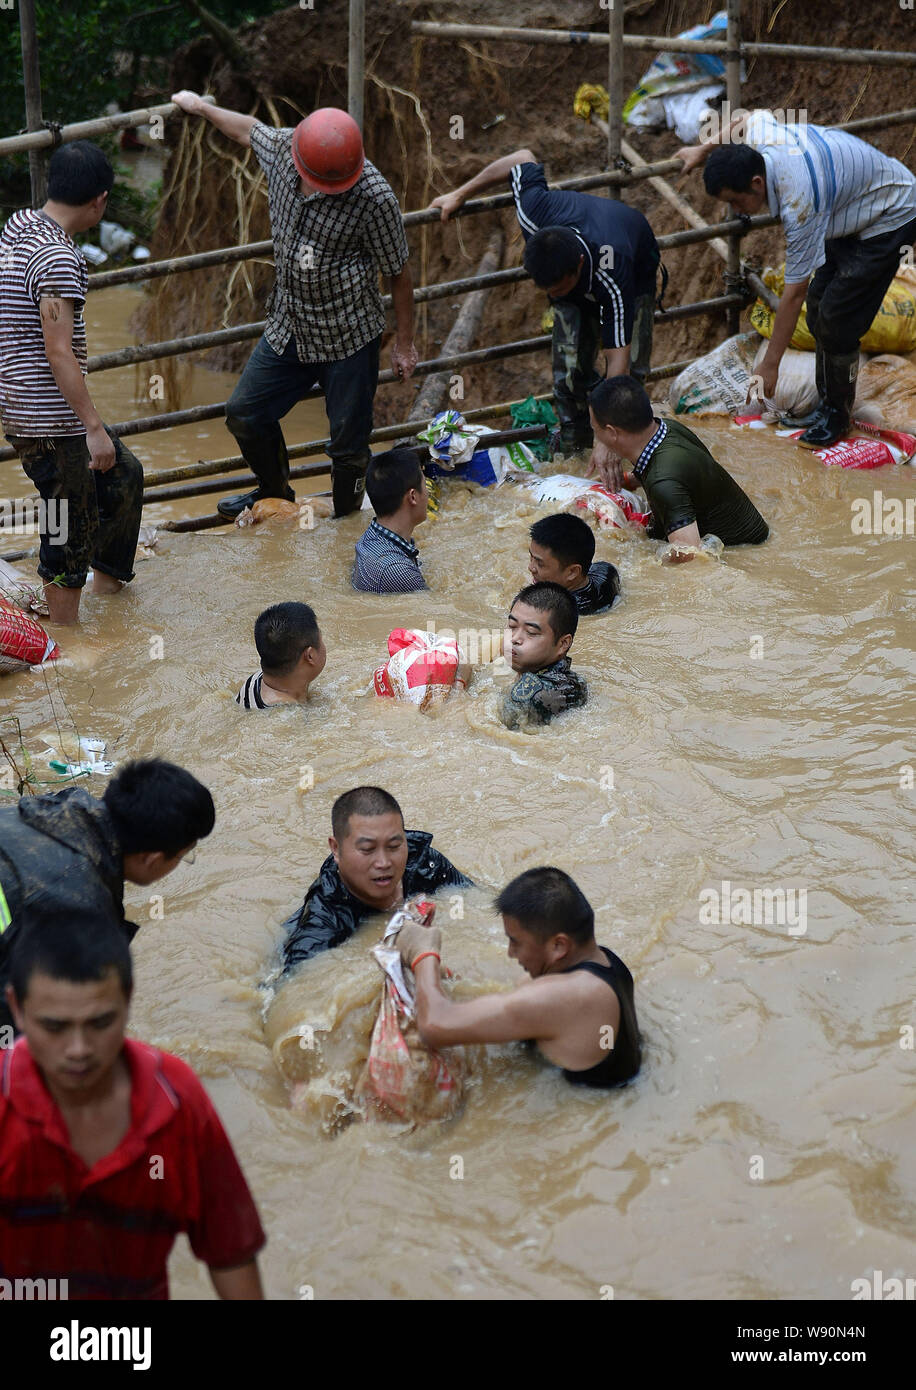 Rettungskräfte tragen Sandsäcke in schlammigen Wasser der Verletzung in Chengdu City zu blockieren, der Südwesten Chinas Provinz Sichuan, 9. Juli 2014. Rettungskräfte Stockfoto